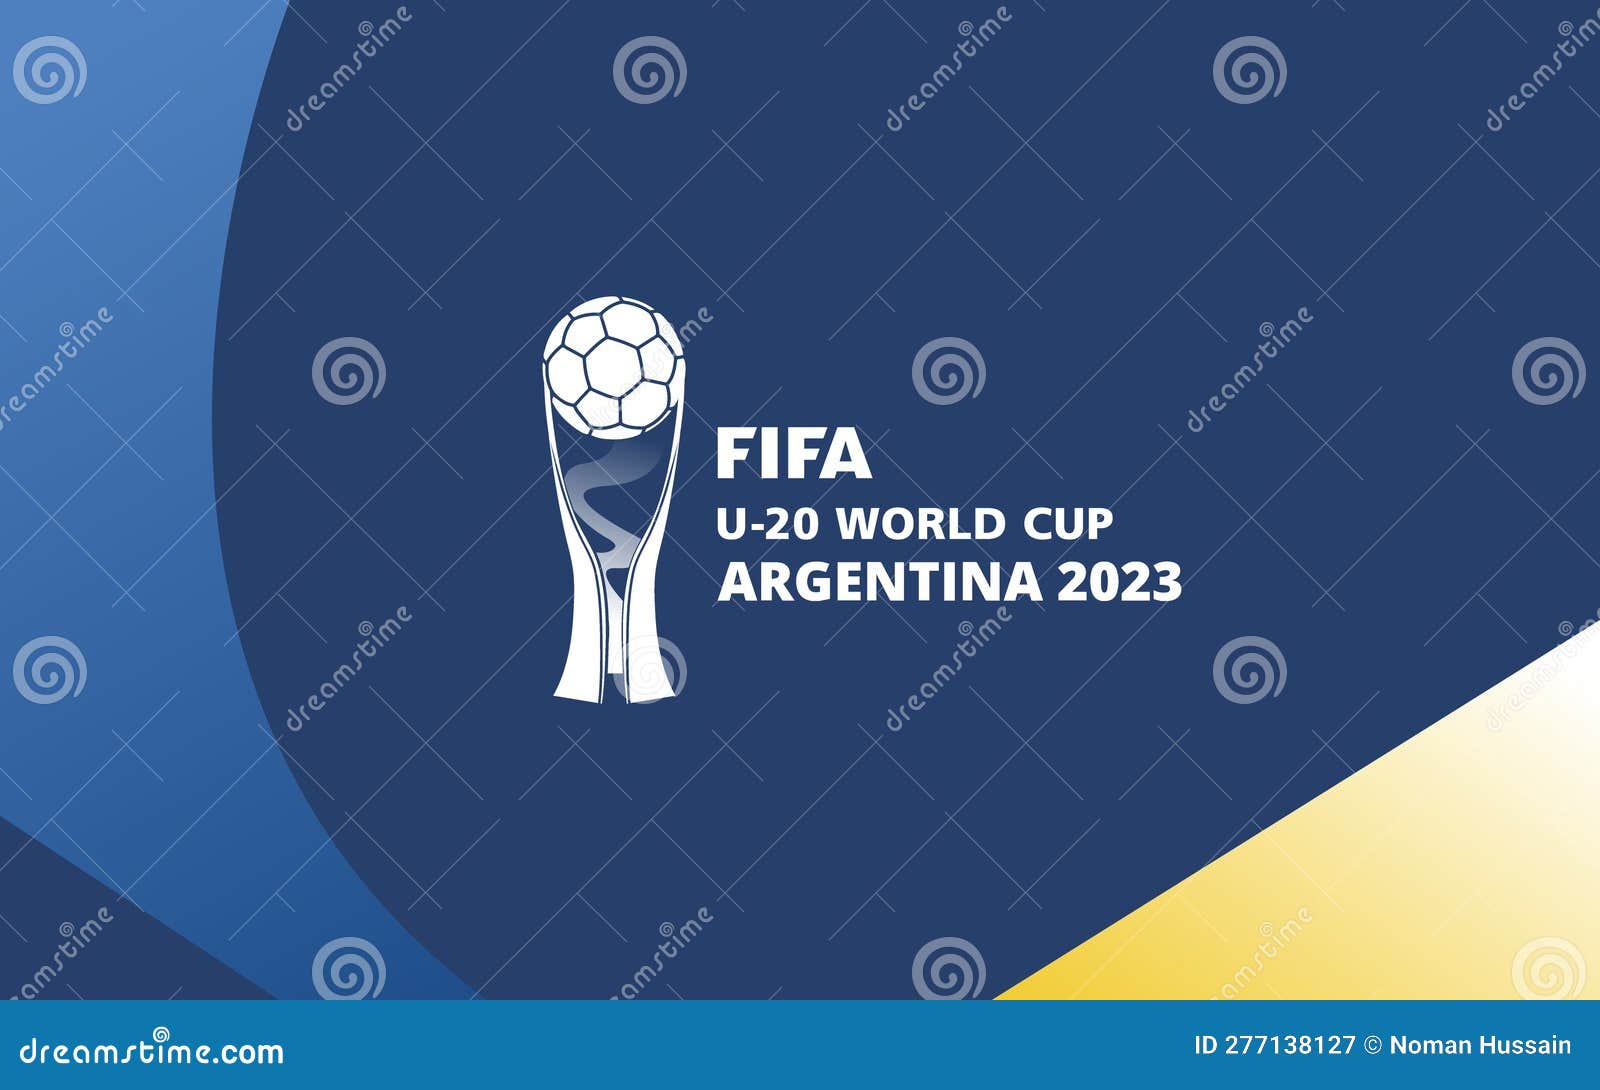 FIFA WORLD CHAMPIONS BADGE 2022 ARGENTINA Logo PNG Vector (AI